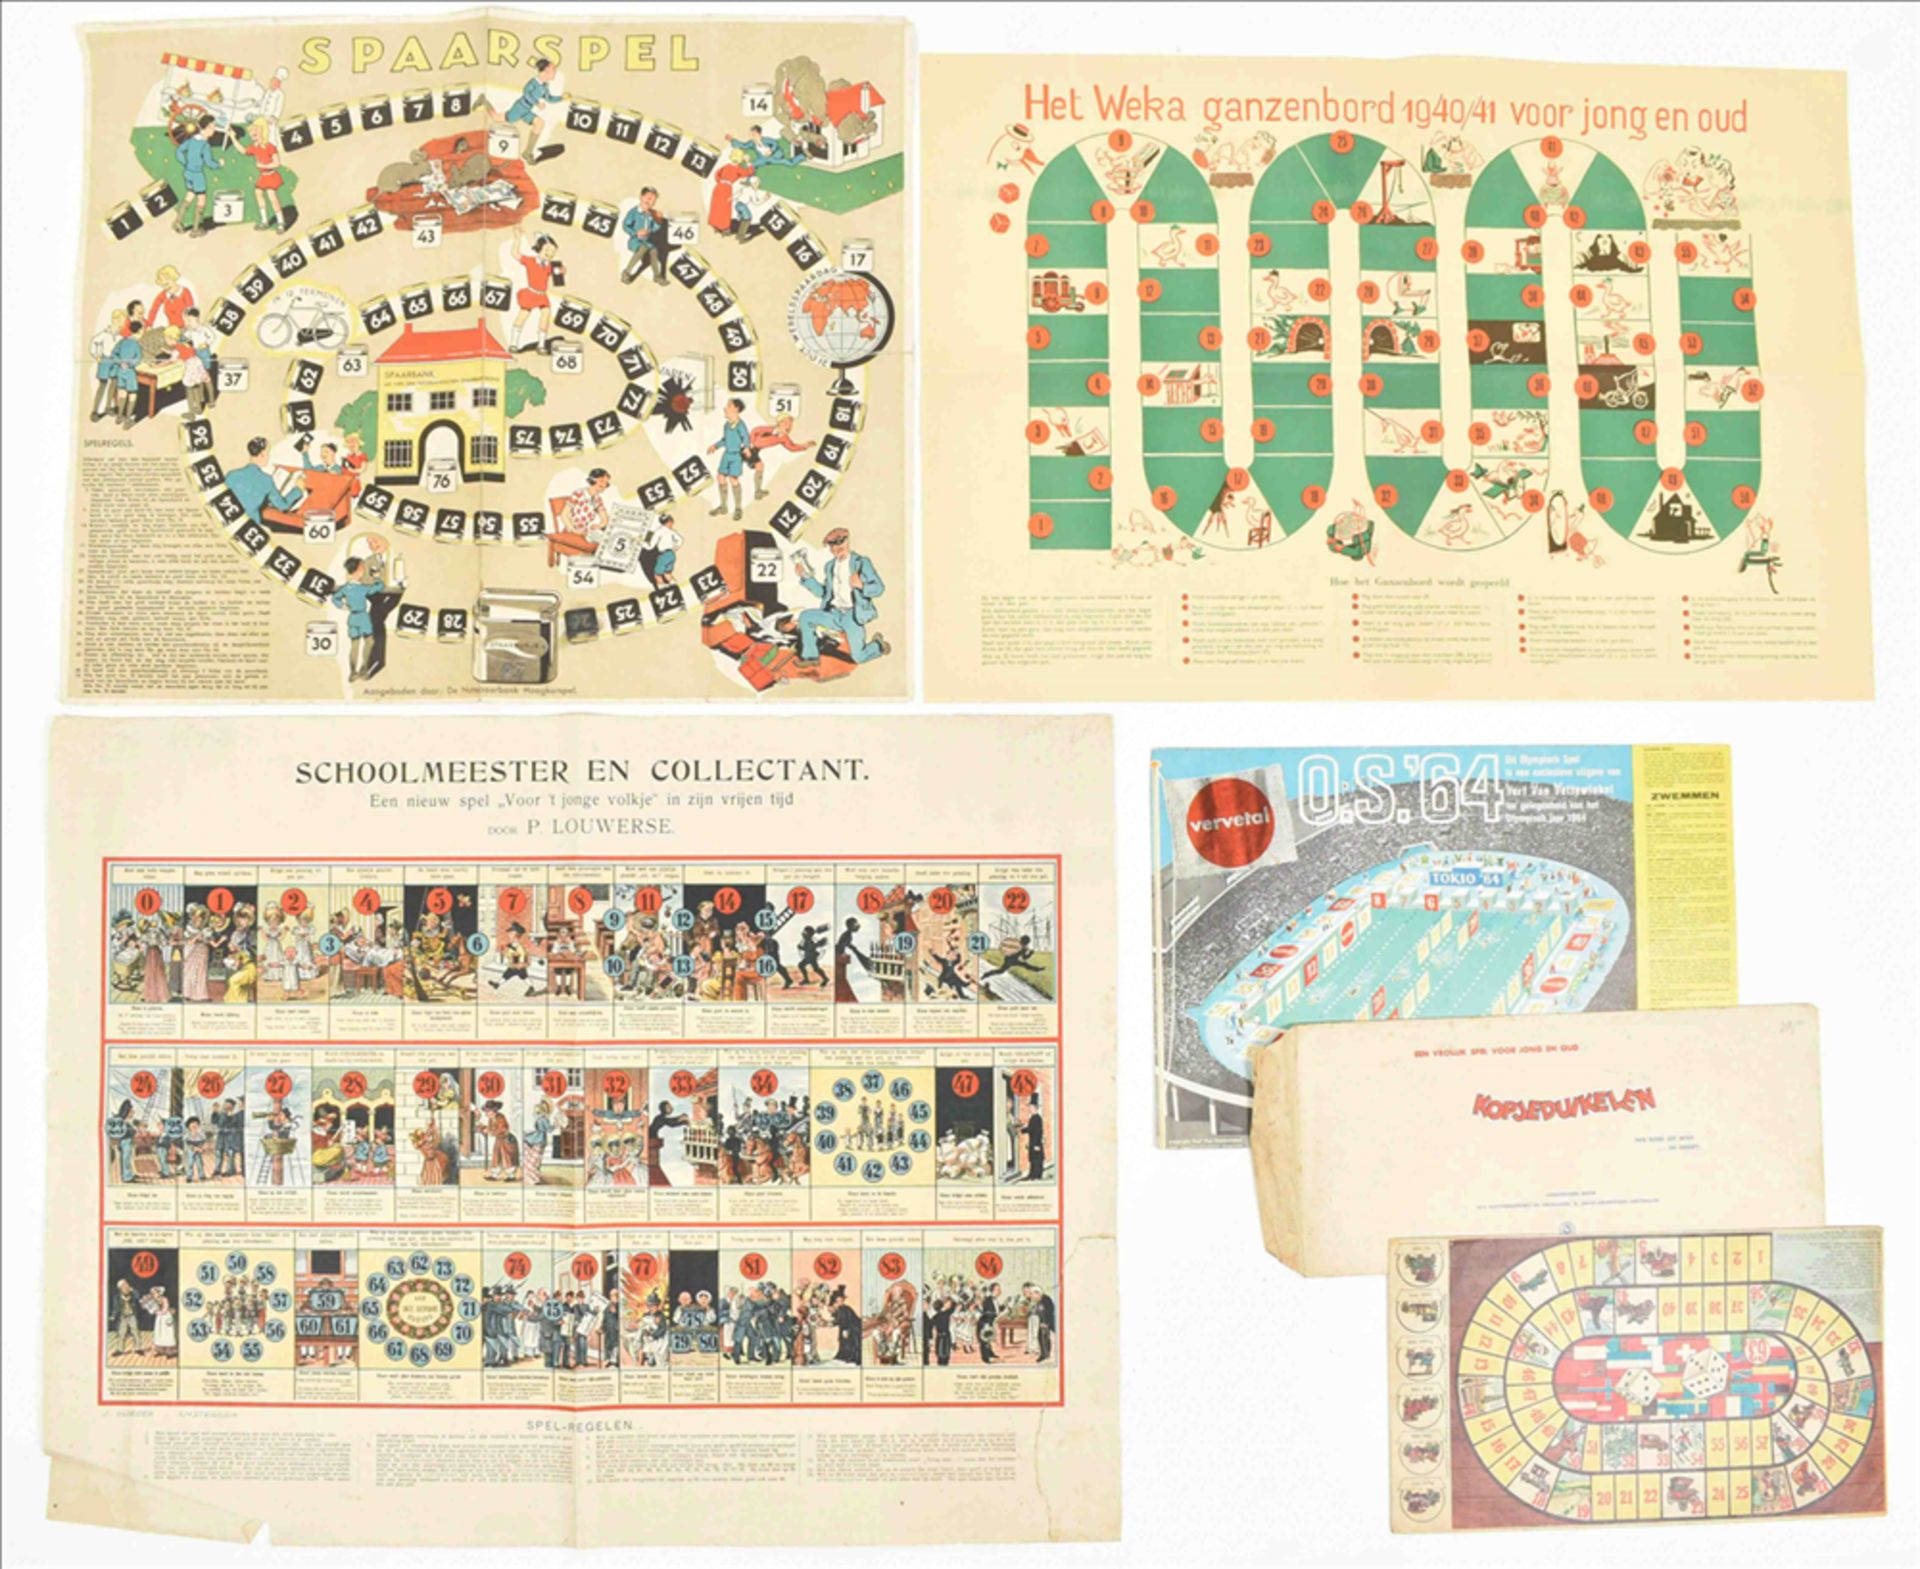 [Advertorial paper board games] Het Weka ganzenbord 1940/41 voor jong en oud - Bild 5 aus 8